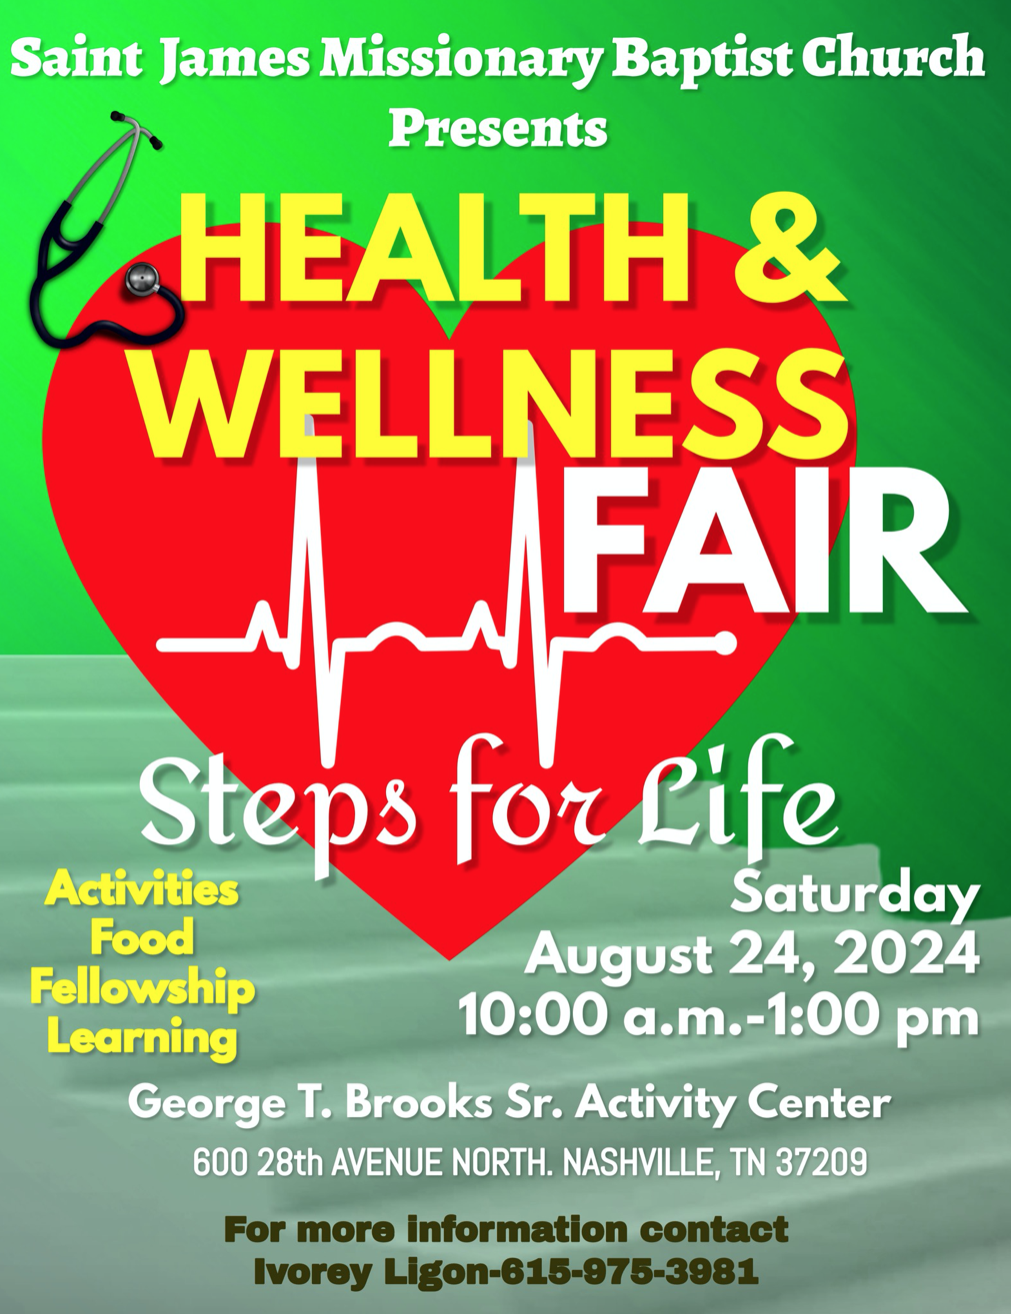 08/24/24 St. James Missionary Baptist Church Health & Wellness Fair: Steps for Life